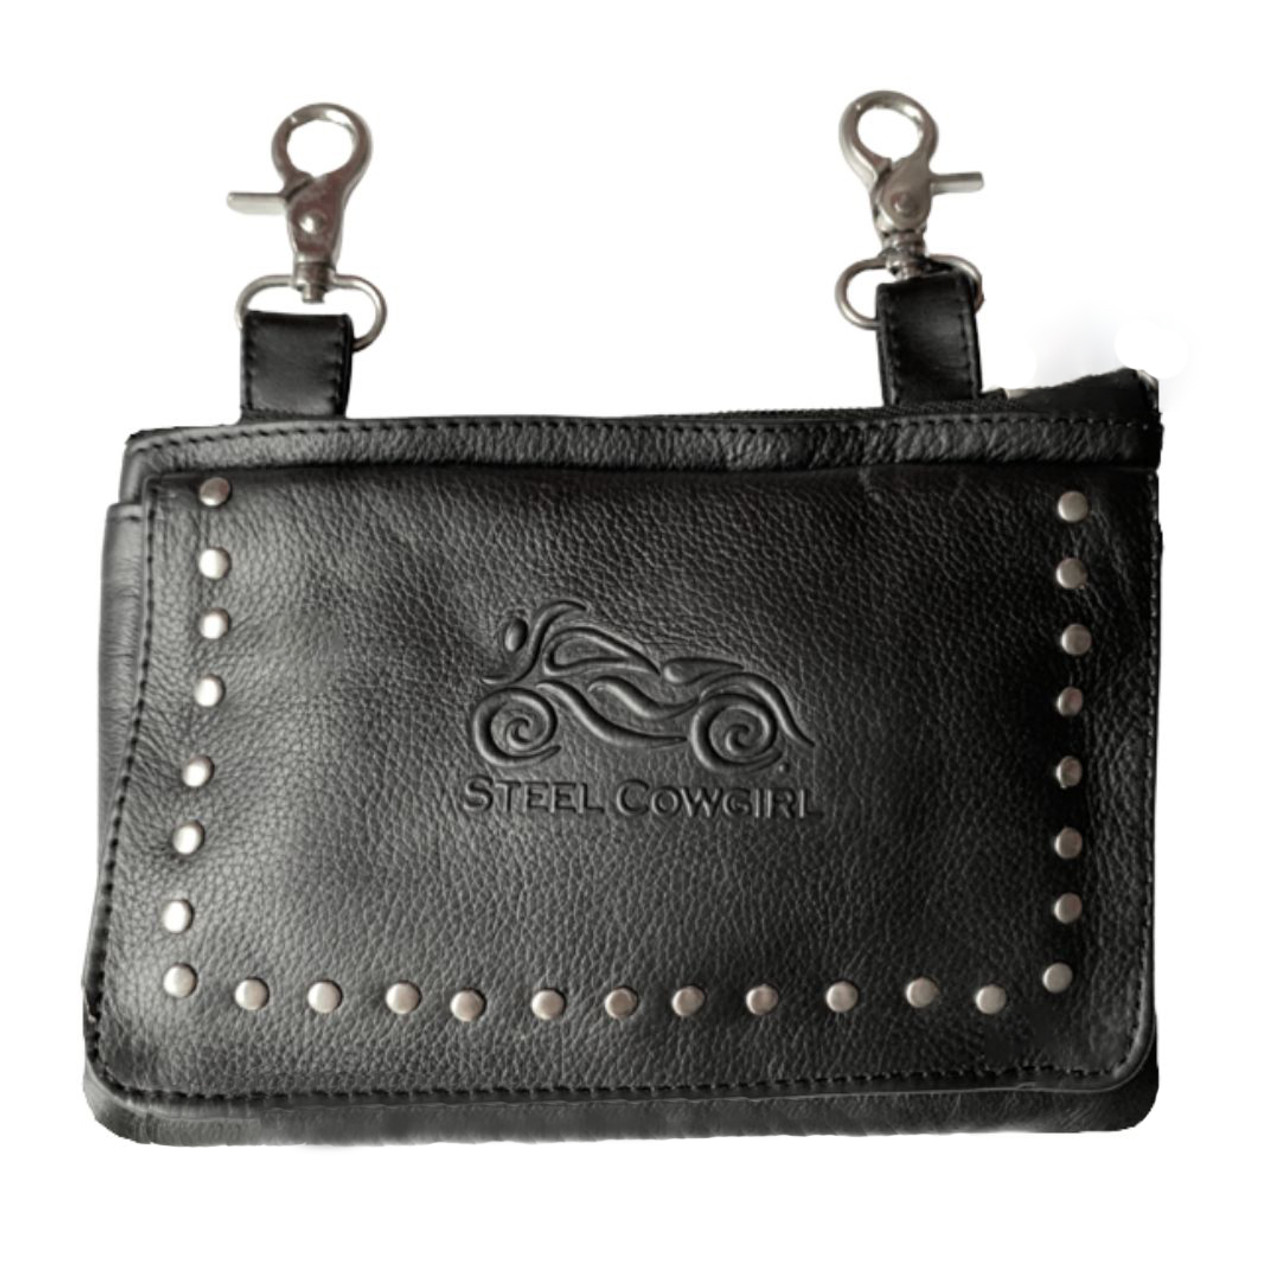 Buy Roadster Black Studded Shoulder Bag - Handbags for Women 1651486 |  Myntra